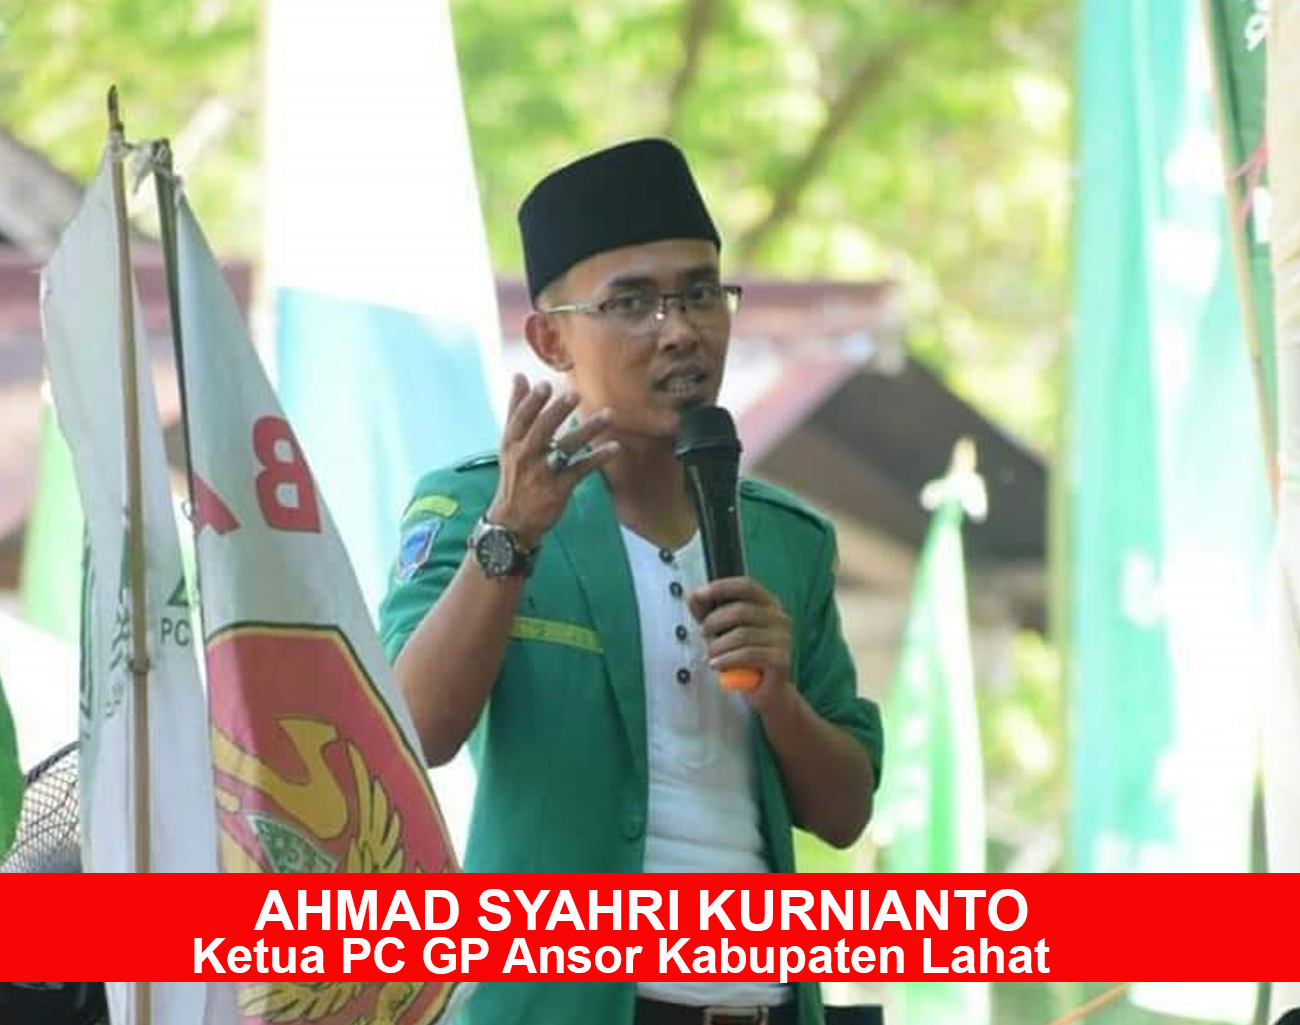 Ketua PC GP Ansor Ahmad Syahri Kurnianto Dukung Kebijakan Pj Bupati Lahat Muhammad Farid Lantik Pjs Kades